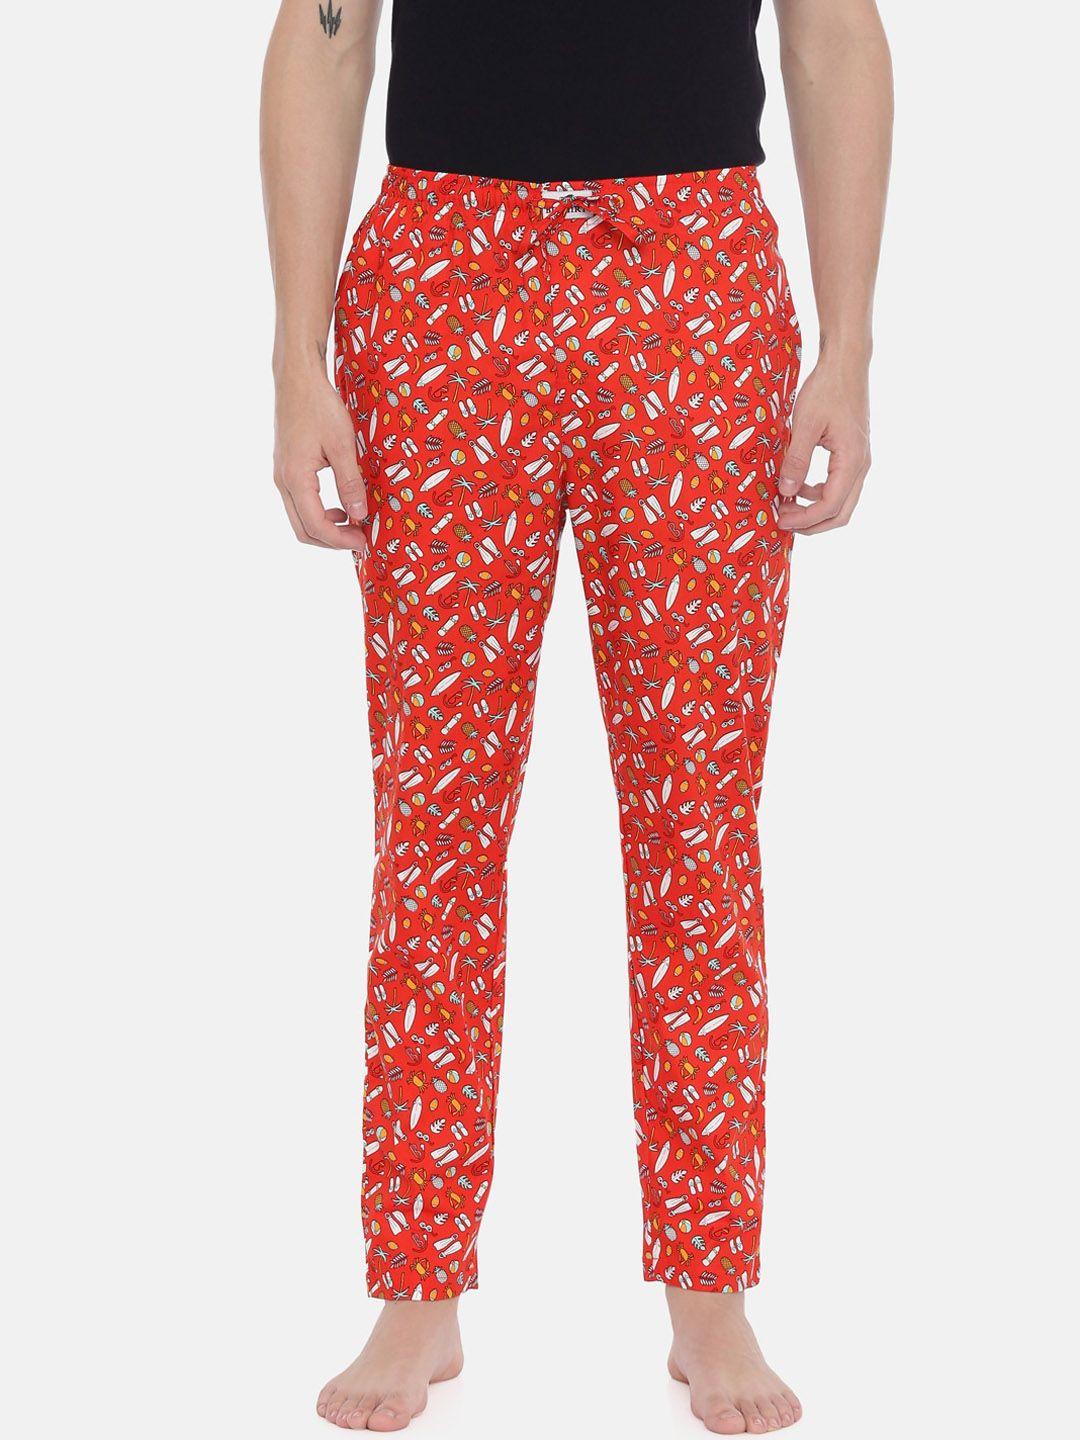 bushirt-men-red-printed-regular-lounge-pants